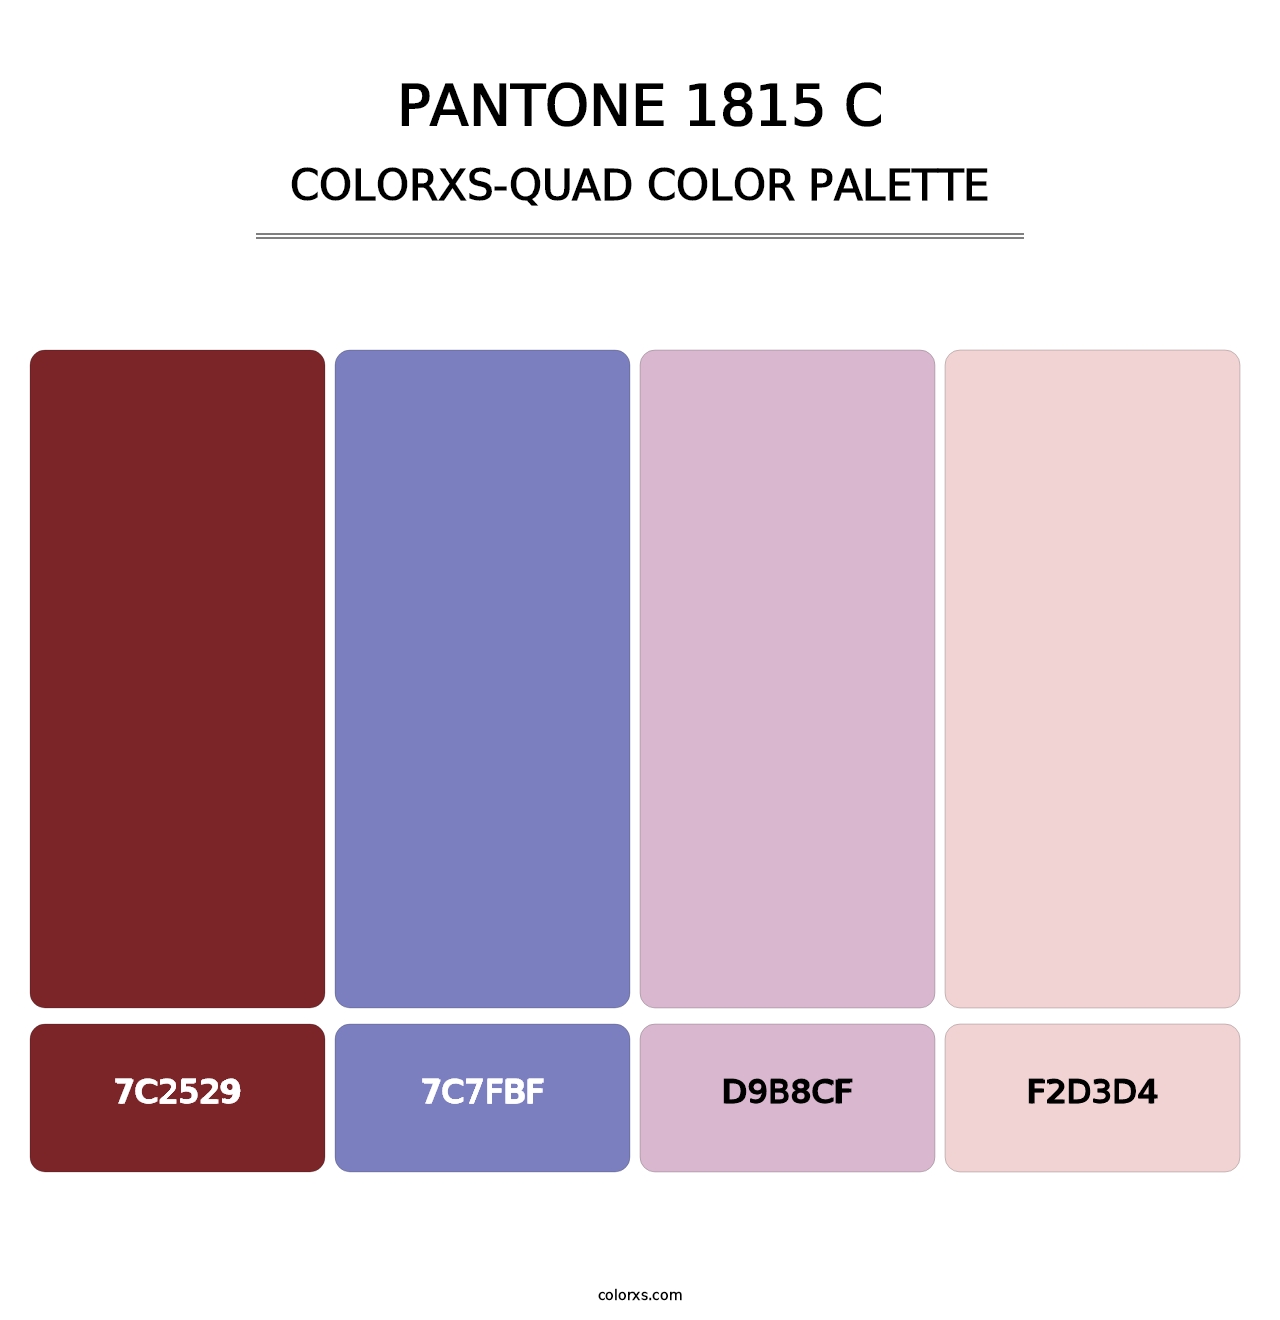 PANTONE 1815 C - Colorxs Quad Palette